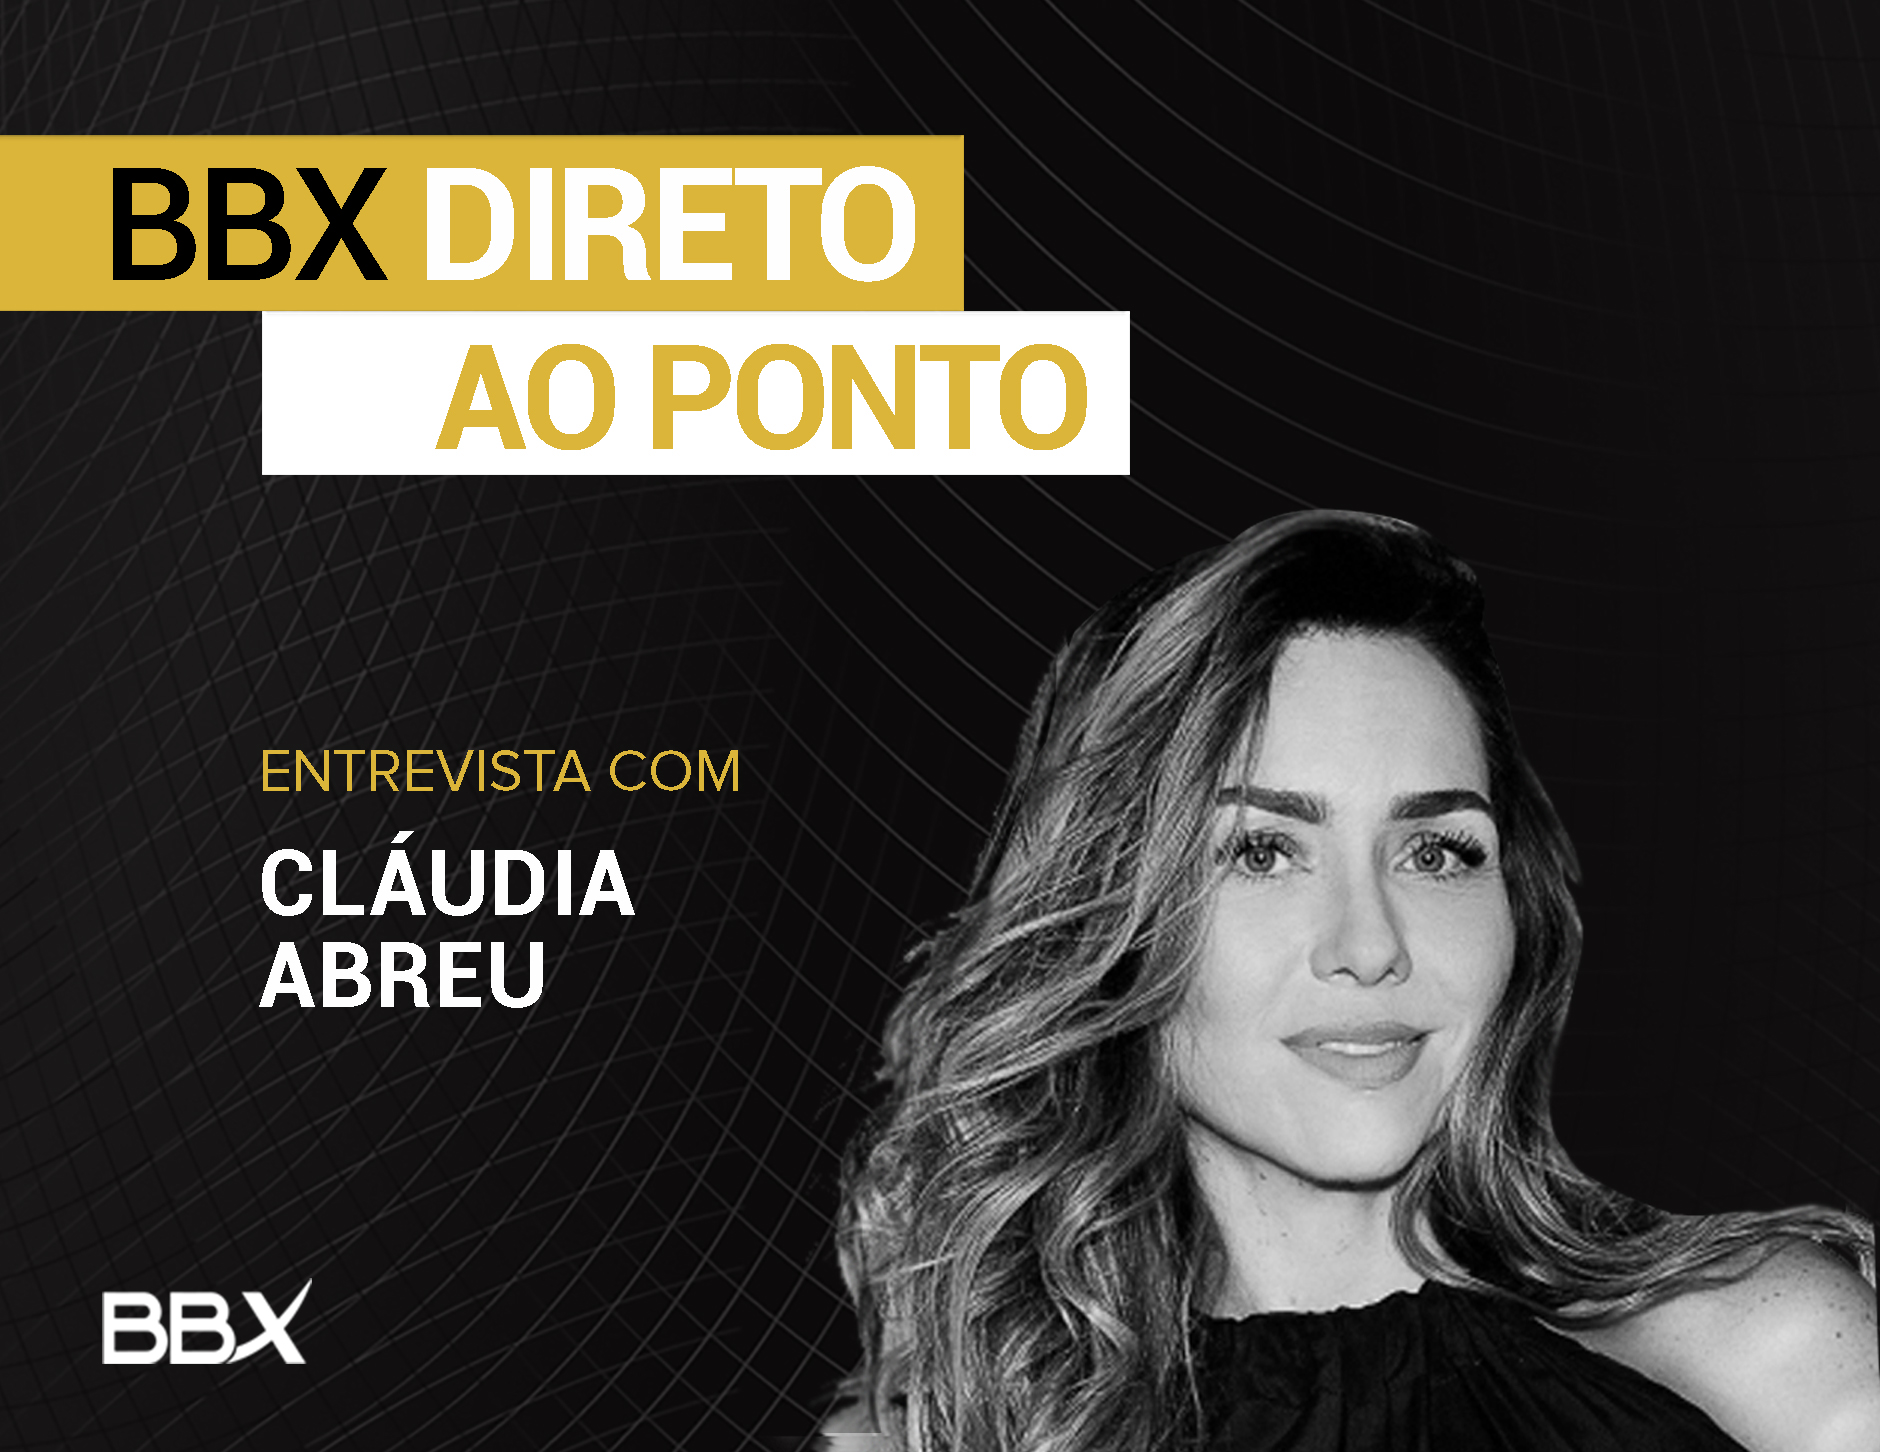 BBX Direto ao Ponto: Entrevista com Claudia Abreu